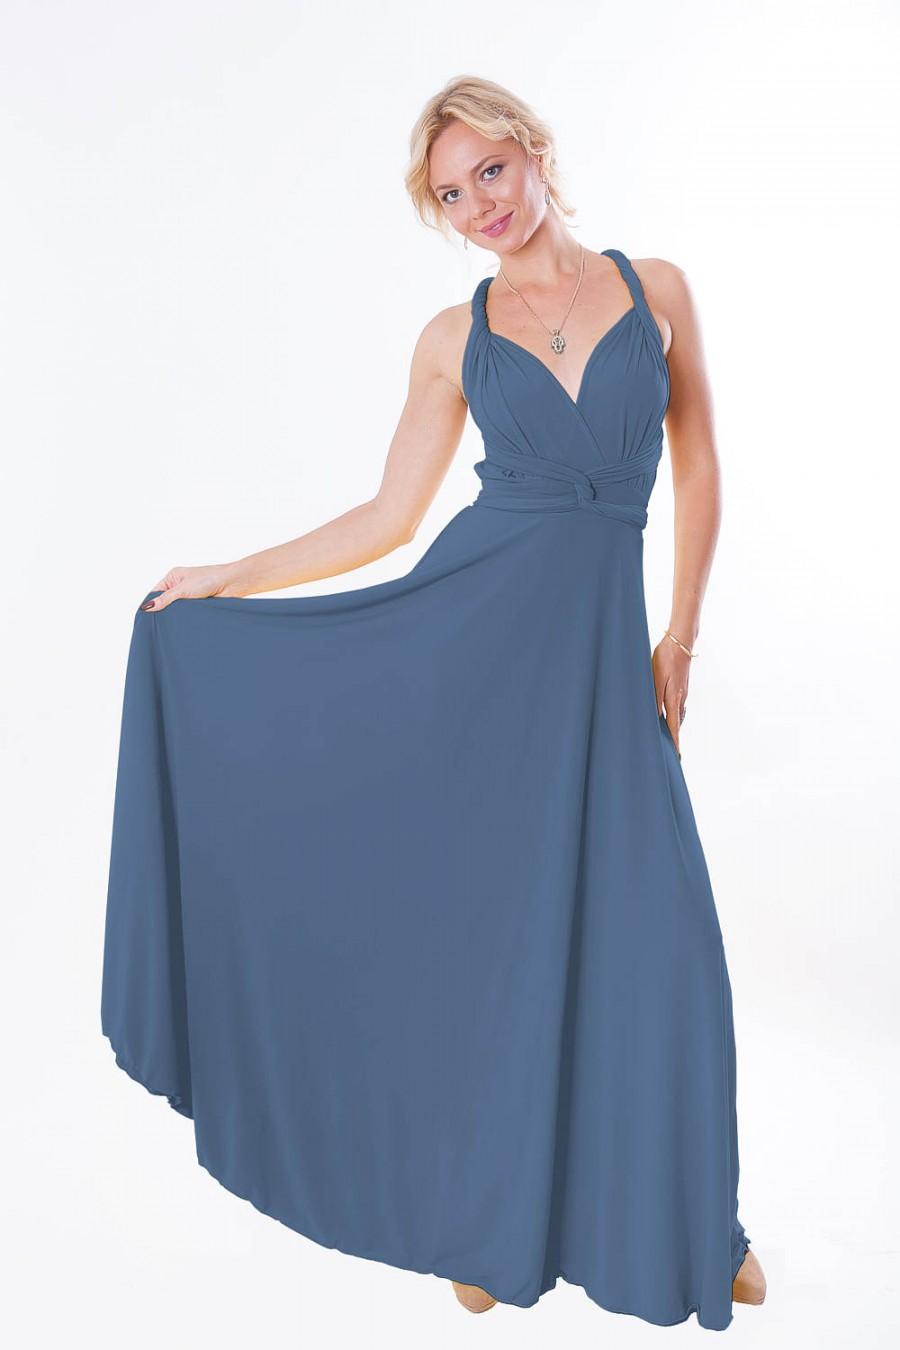 زفاف - Convertible/Infinity Dress - floor length with long straps  in jeans color wrap dress